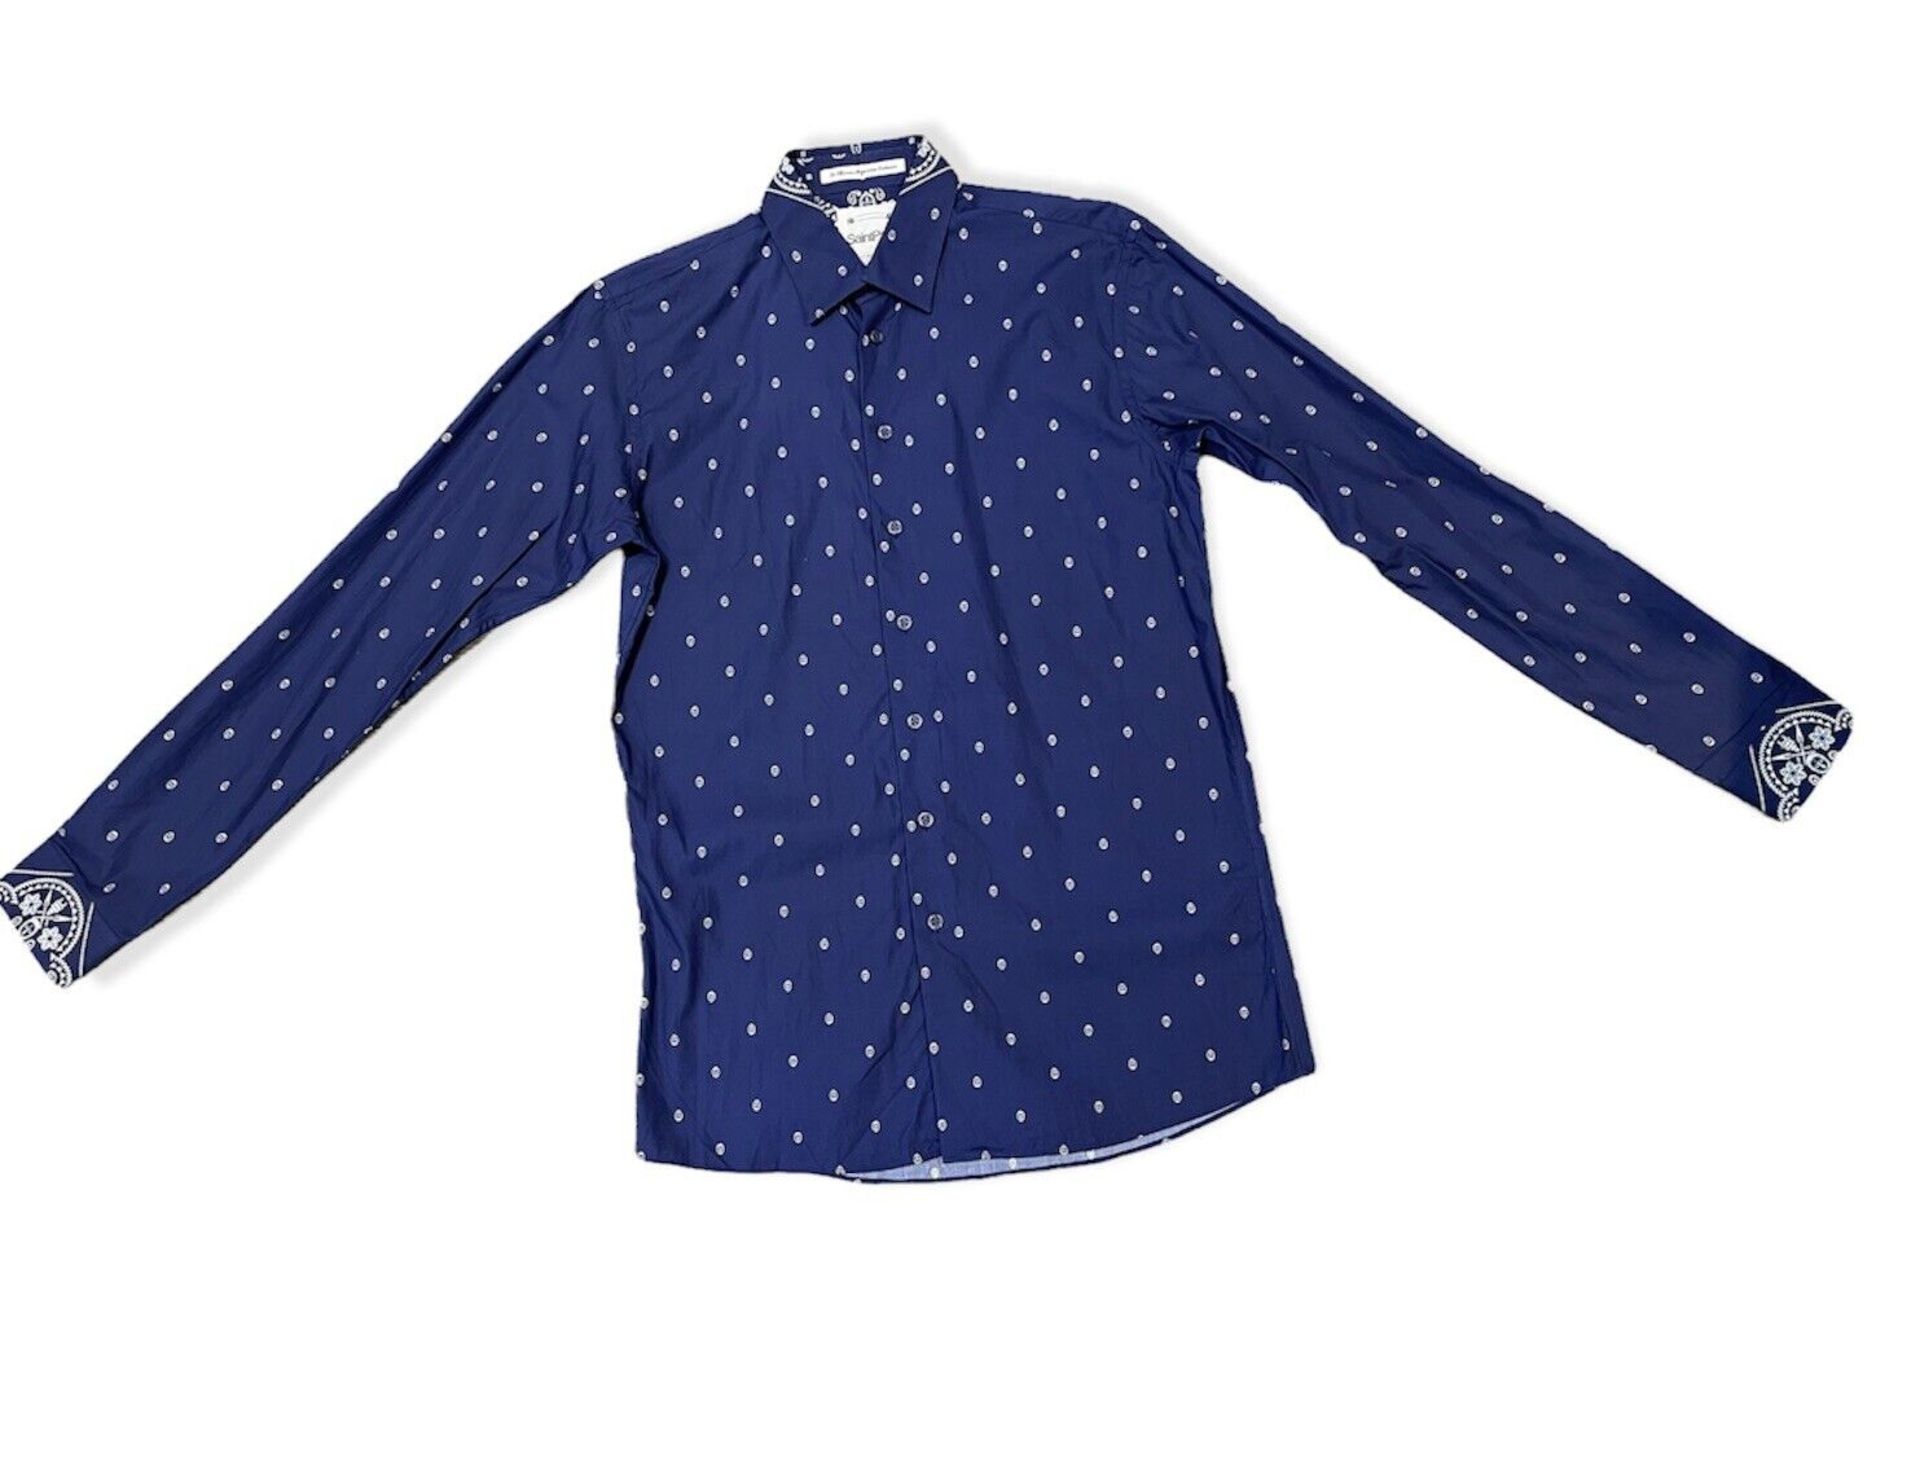 saint paul blue shirt size L RRP £85